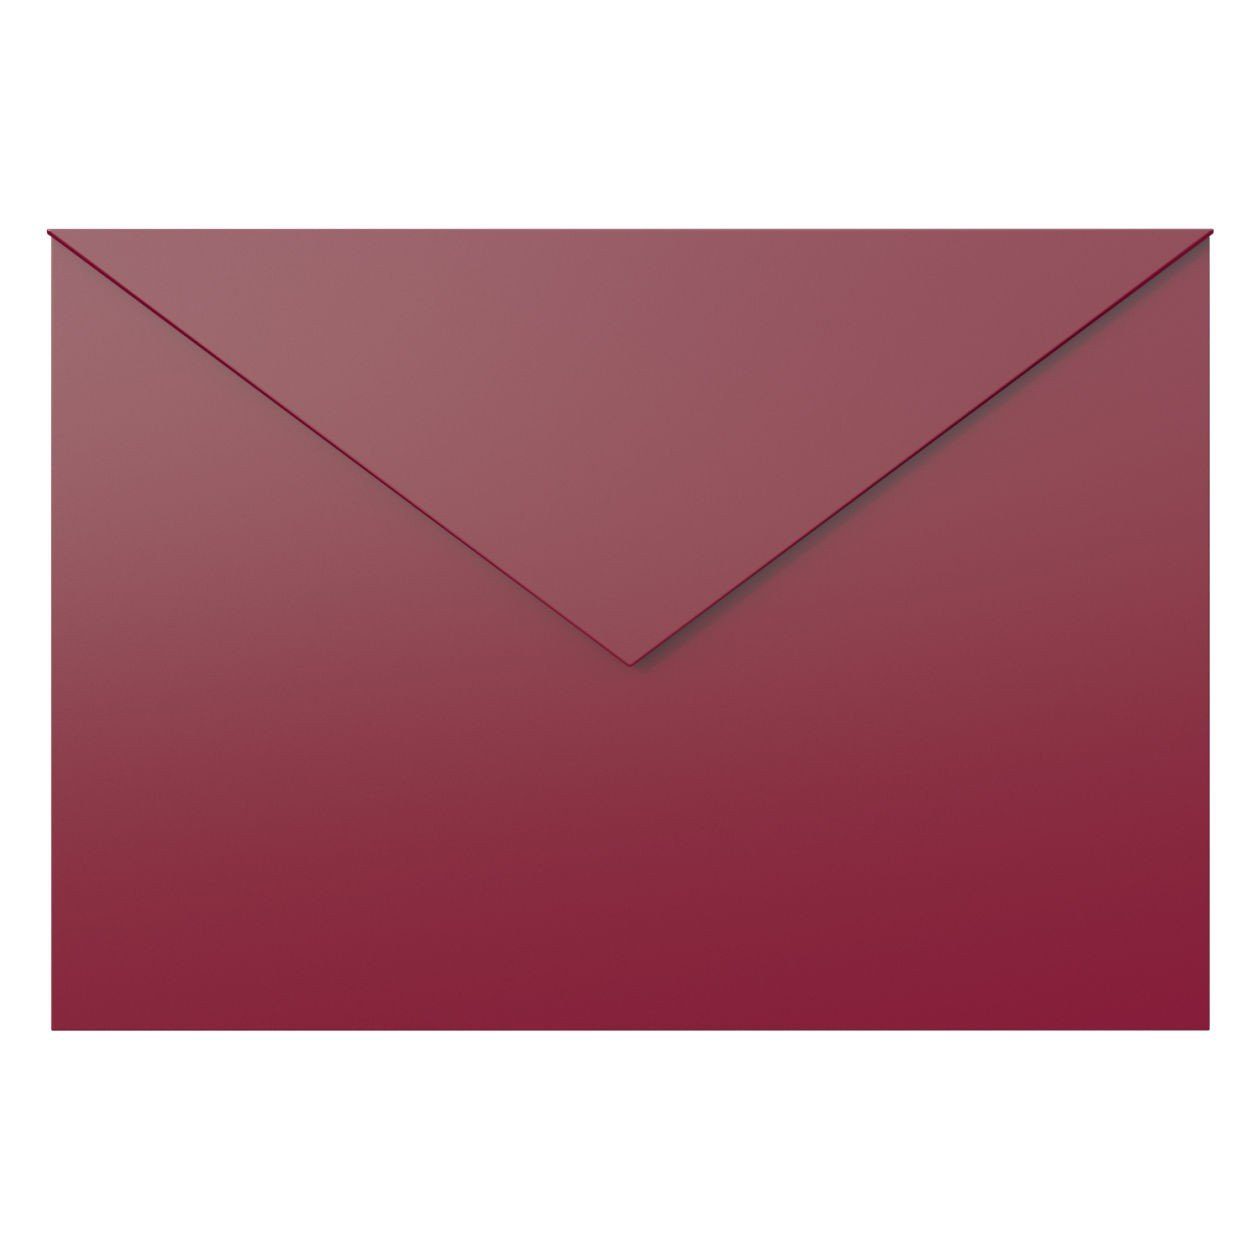 Briefkasten Briefkasten Bravios Rot Letter